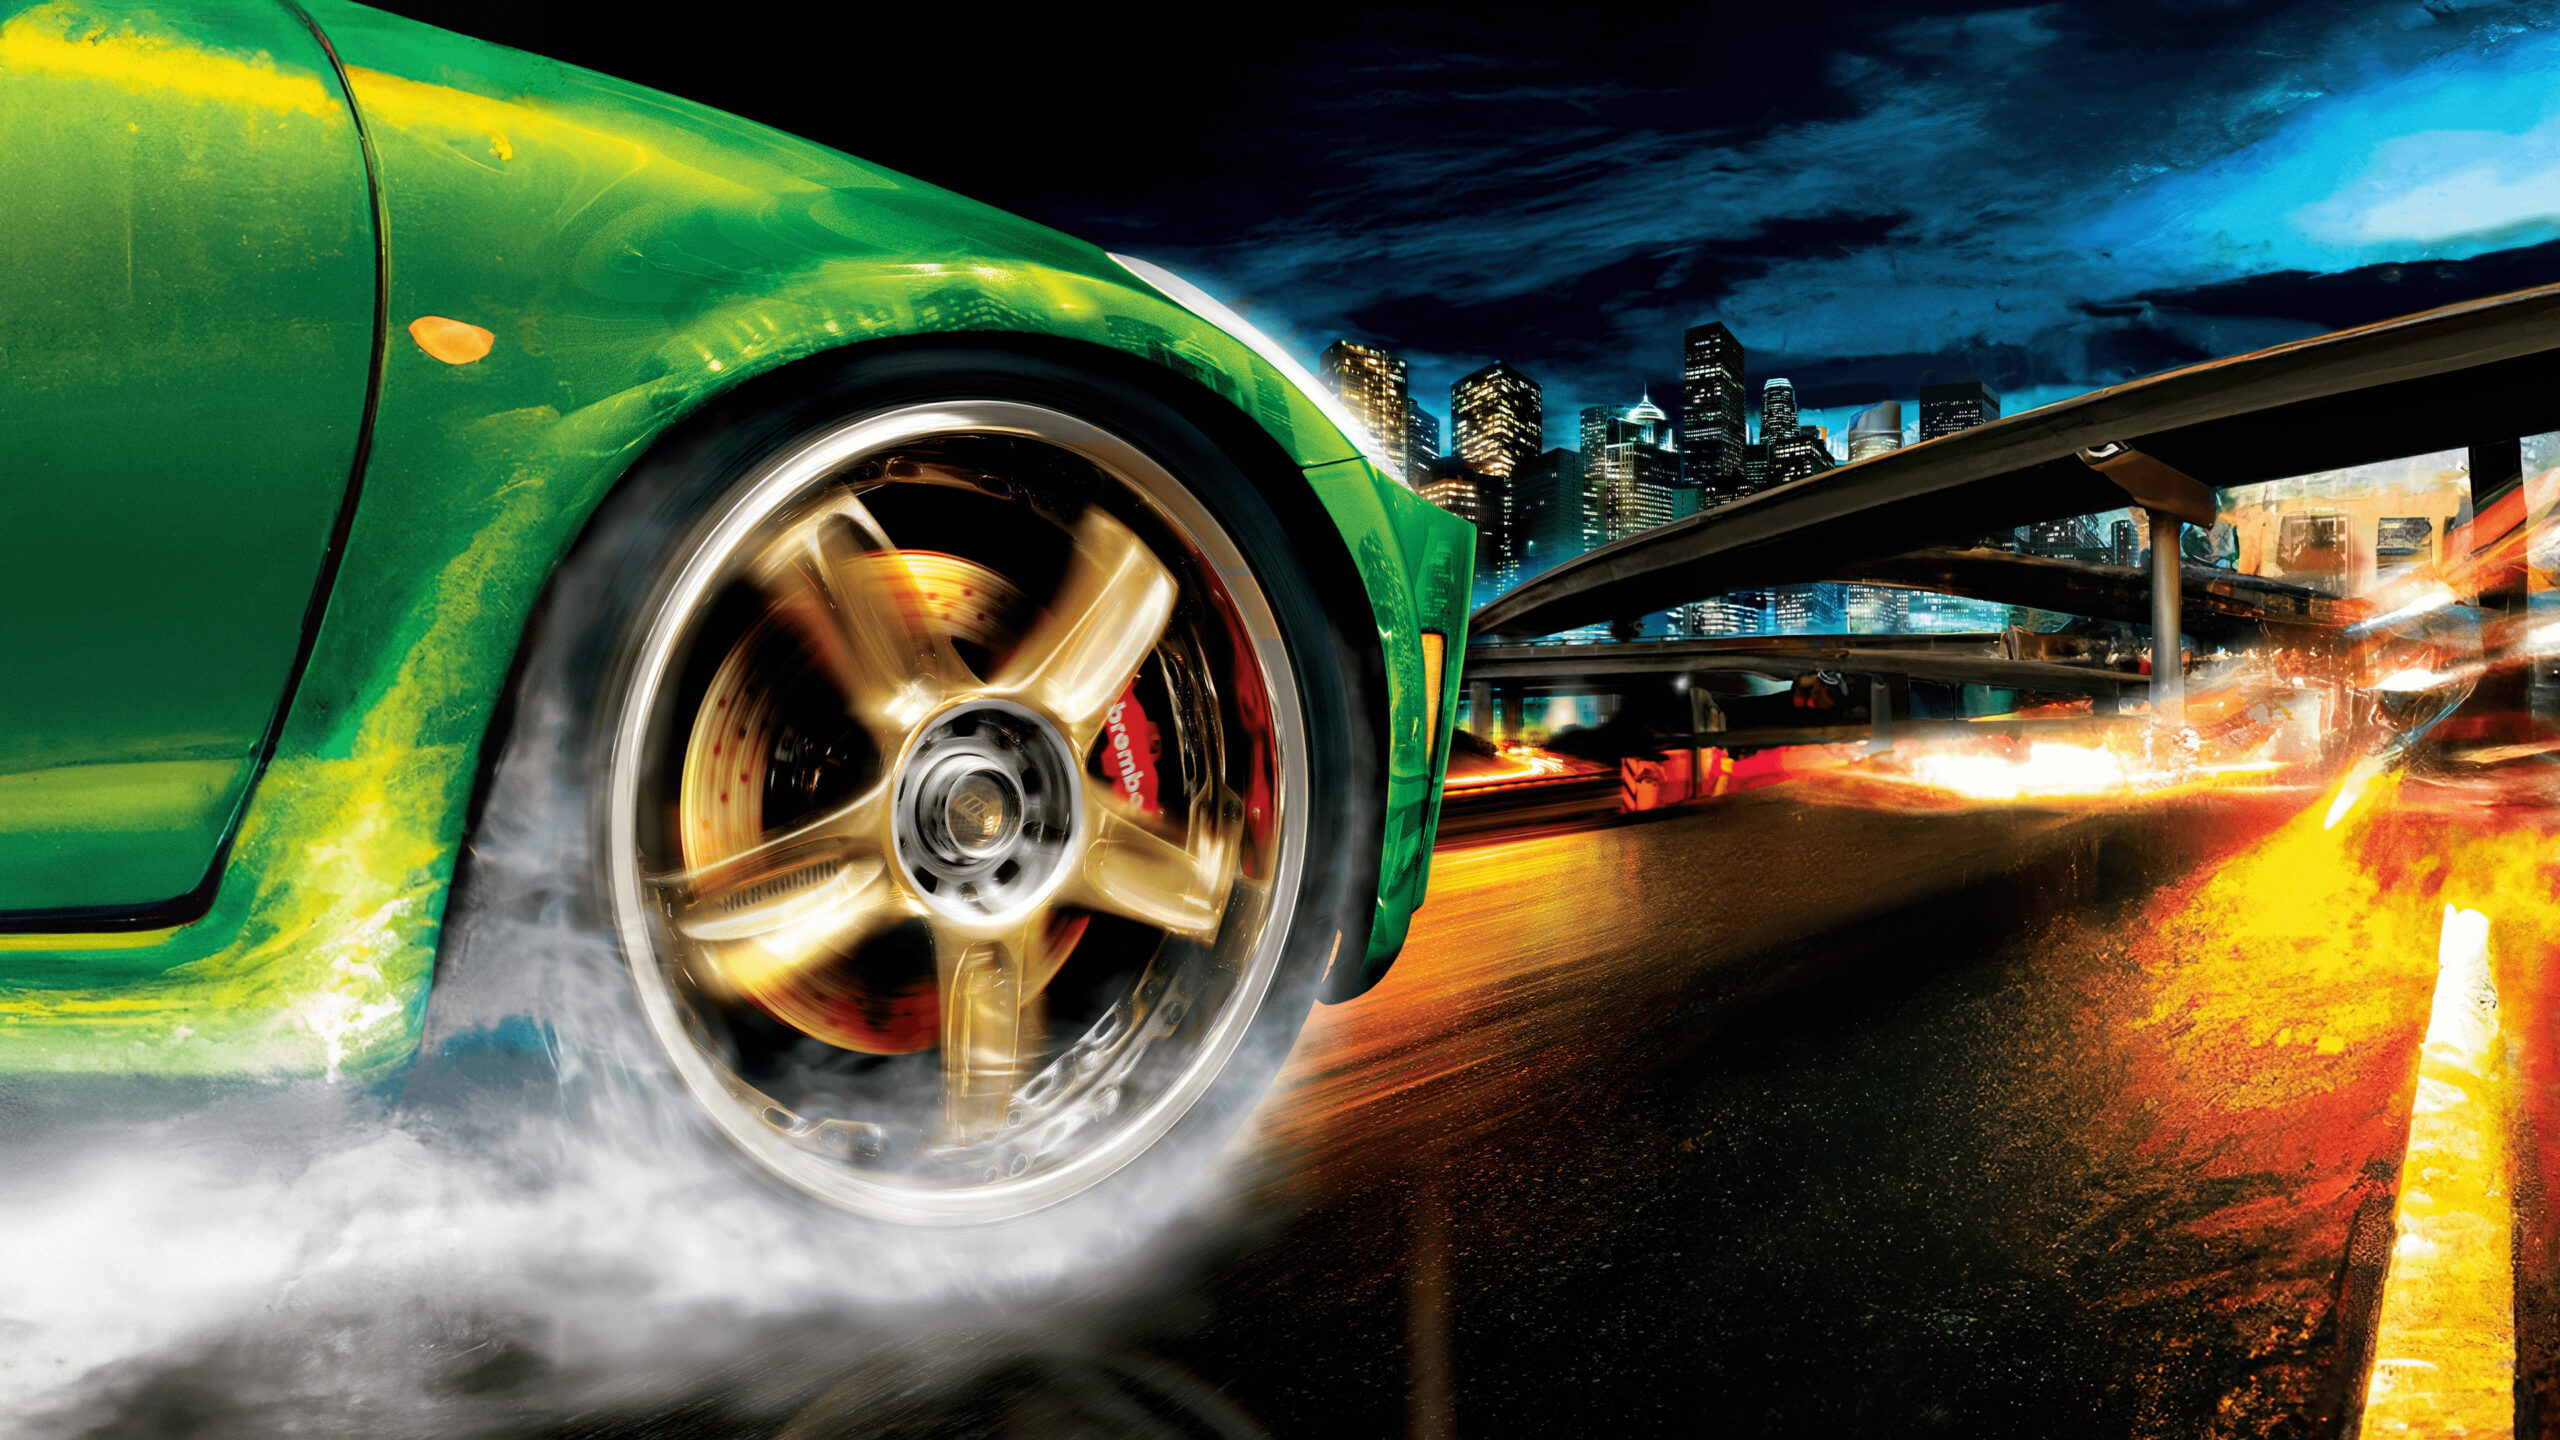 عبارت Need for Speed از کدام فیلم الهام گرفته شده؟